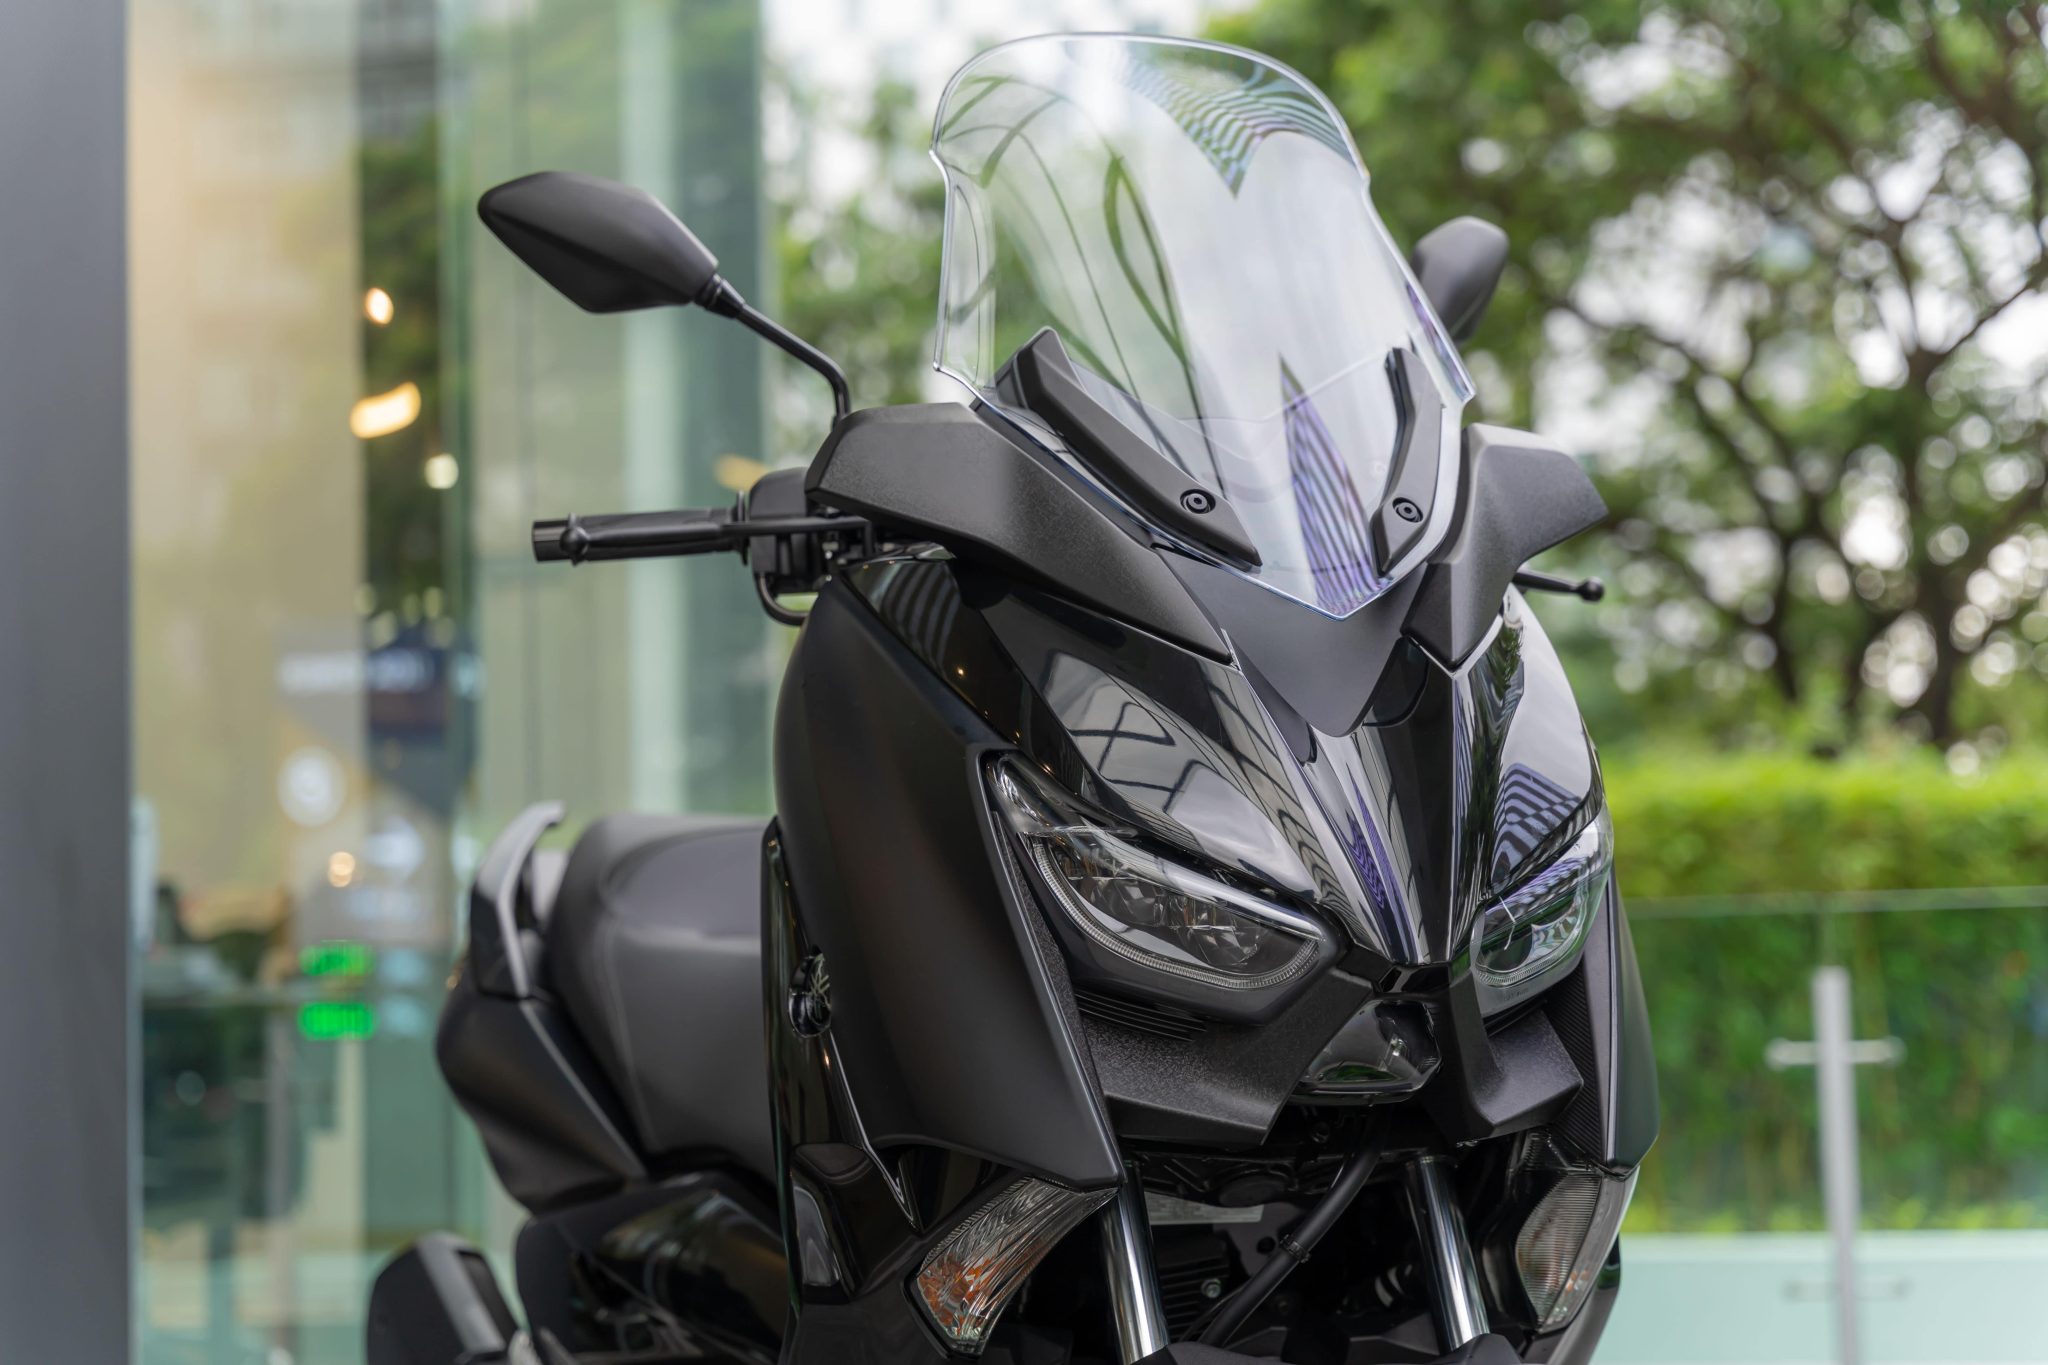 Yamaha XMAX 300 và TMAX chính thức ra mắt, nâng tầm trải nghiệm bứt tốc